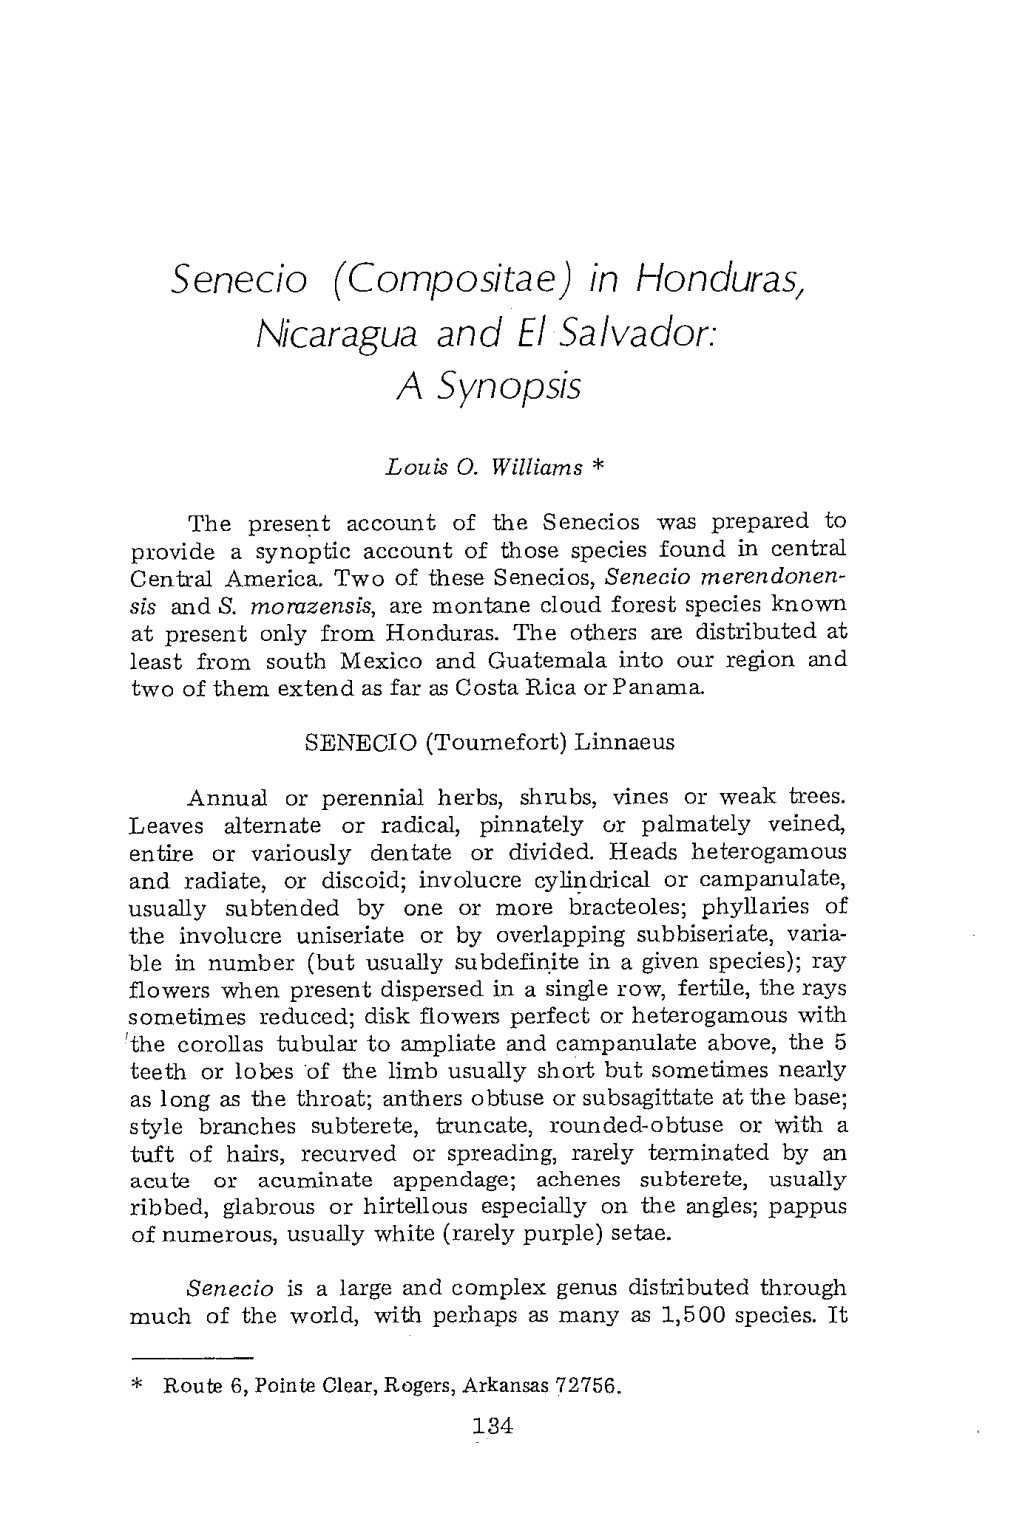 Senecio (Compositae) in Honduras, Nicaragua and El Salvador: a Synopsis